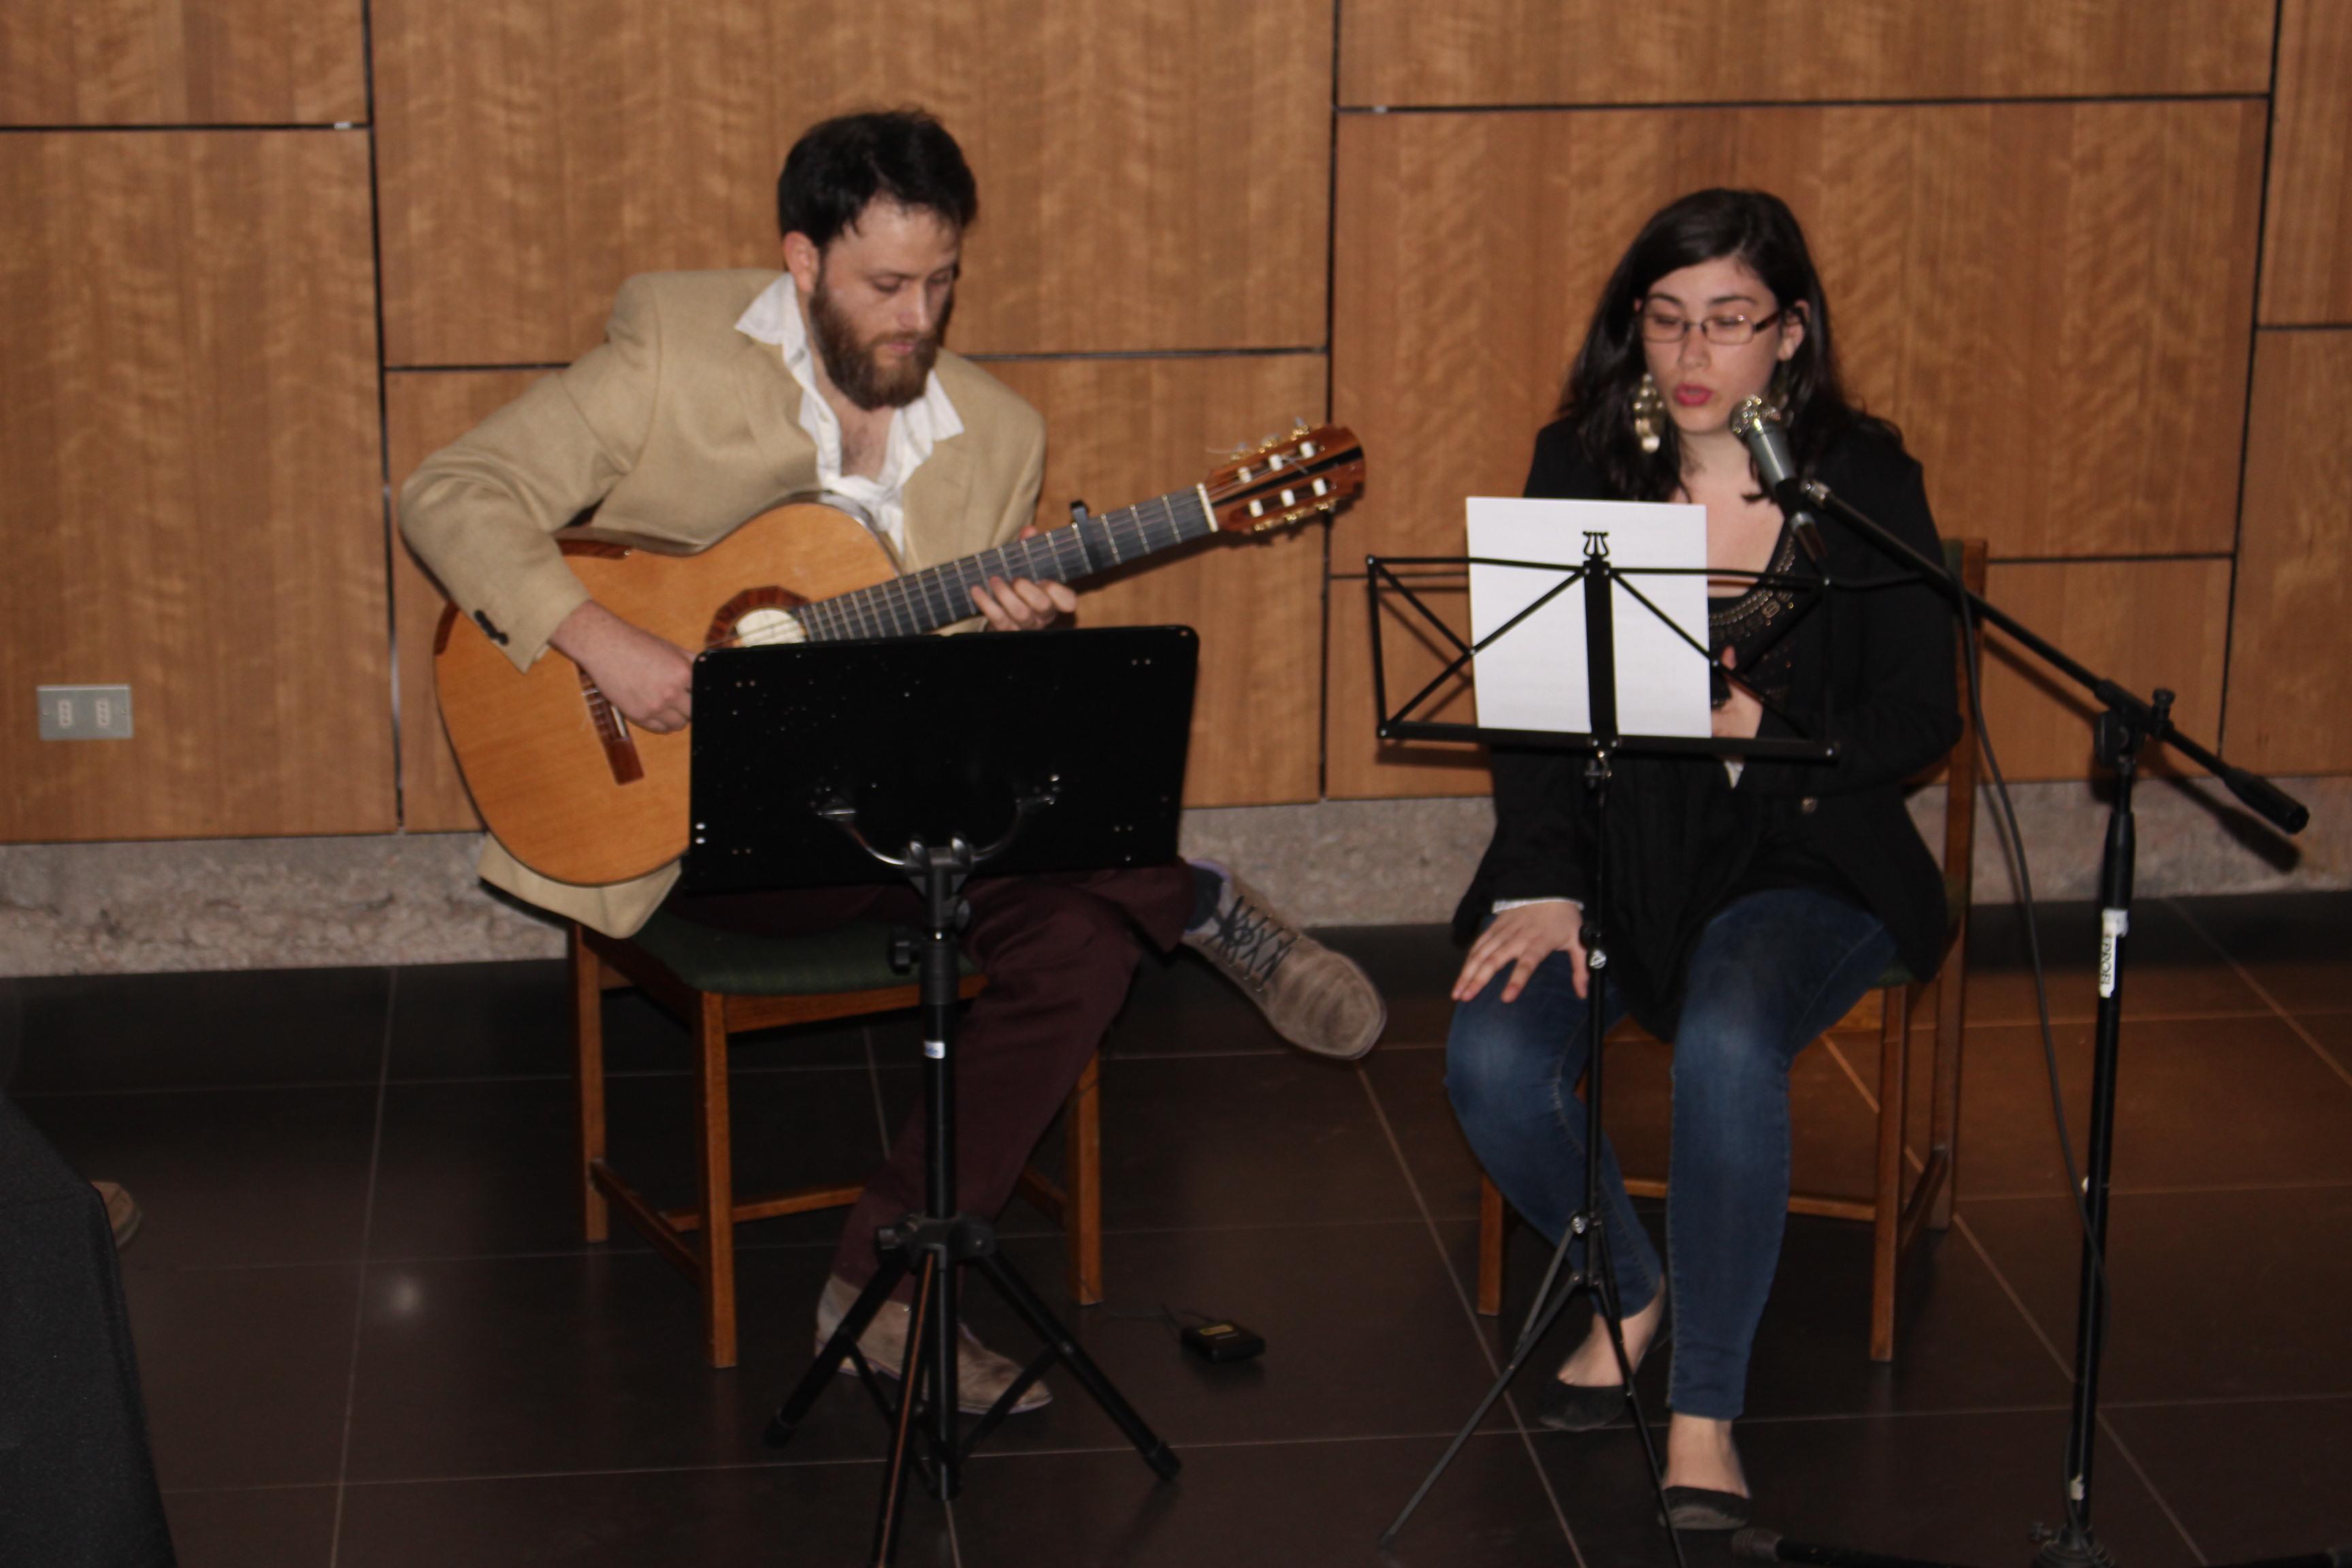 El acto de lanzamiento también contó con una intervención musical a cargo de los músicos Patricio y Andrea Nuño.